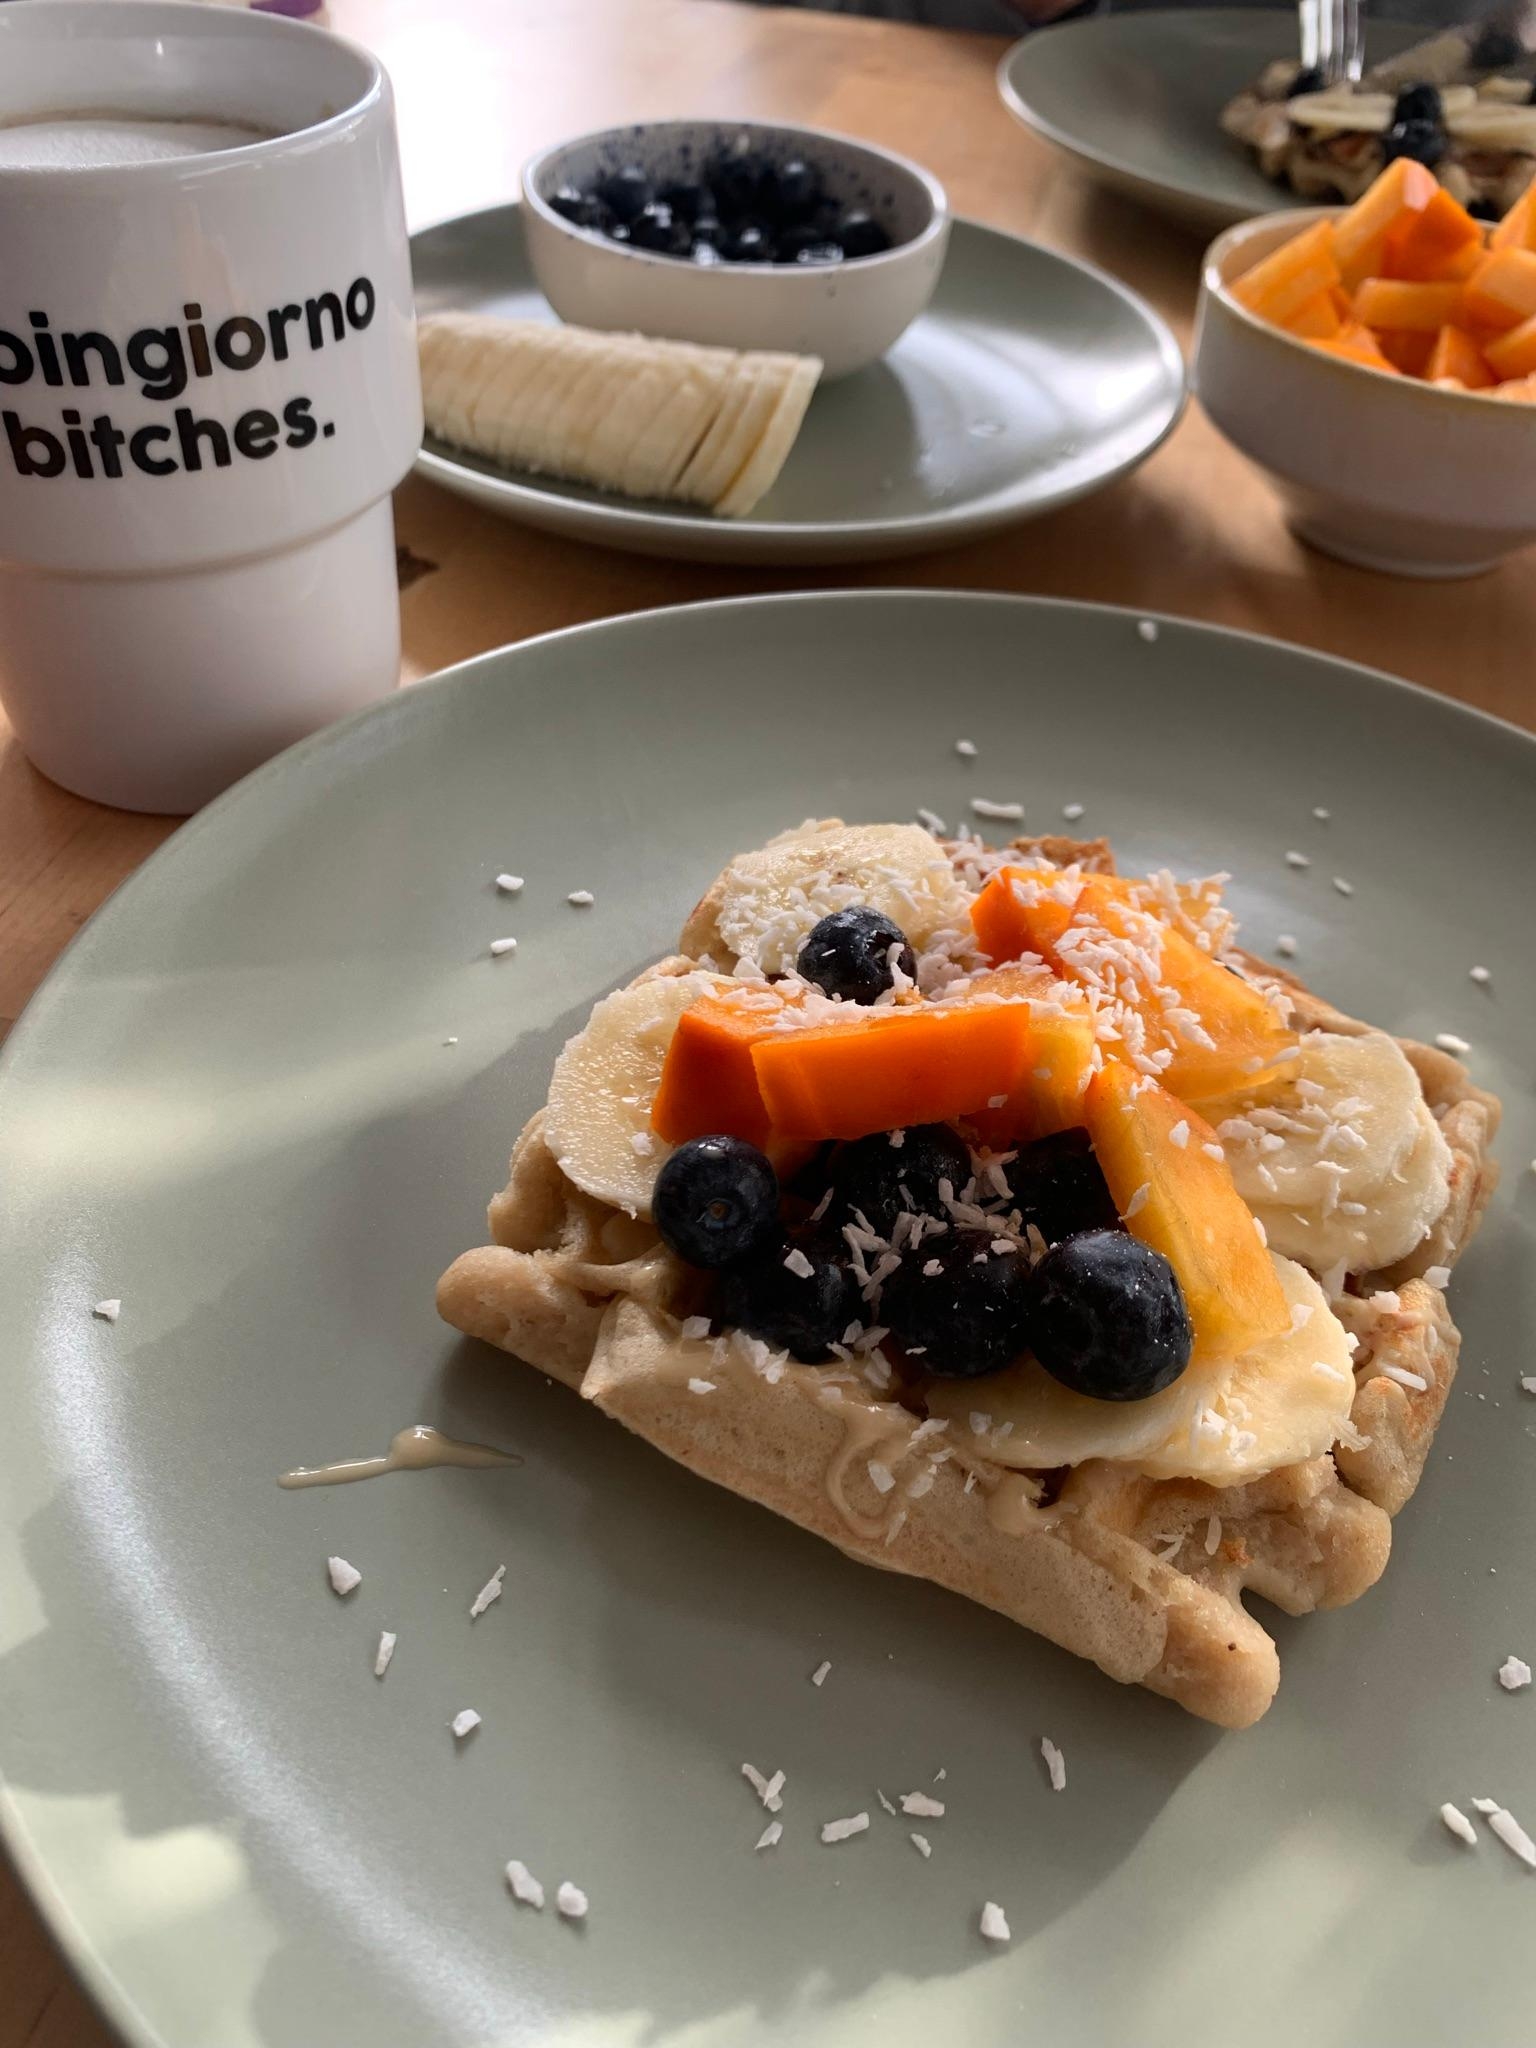 Moingiorno! Vegane Waffeln und Kaffee = Love 🤍 #frühstückstisch #foodchallenge